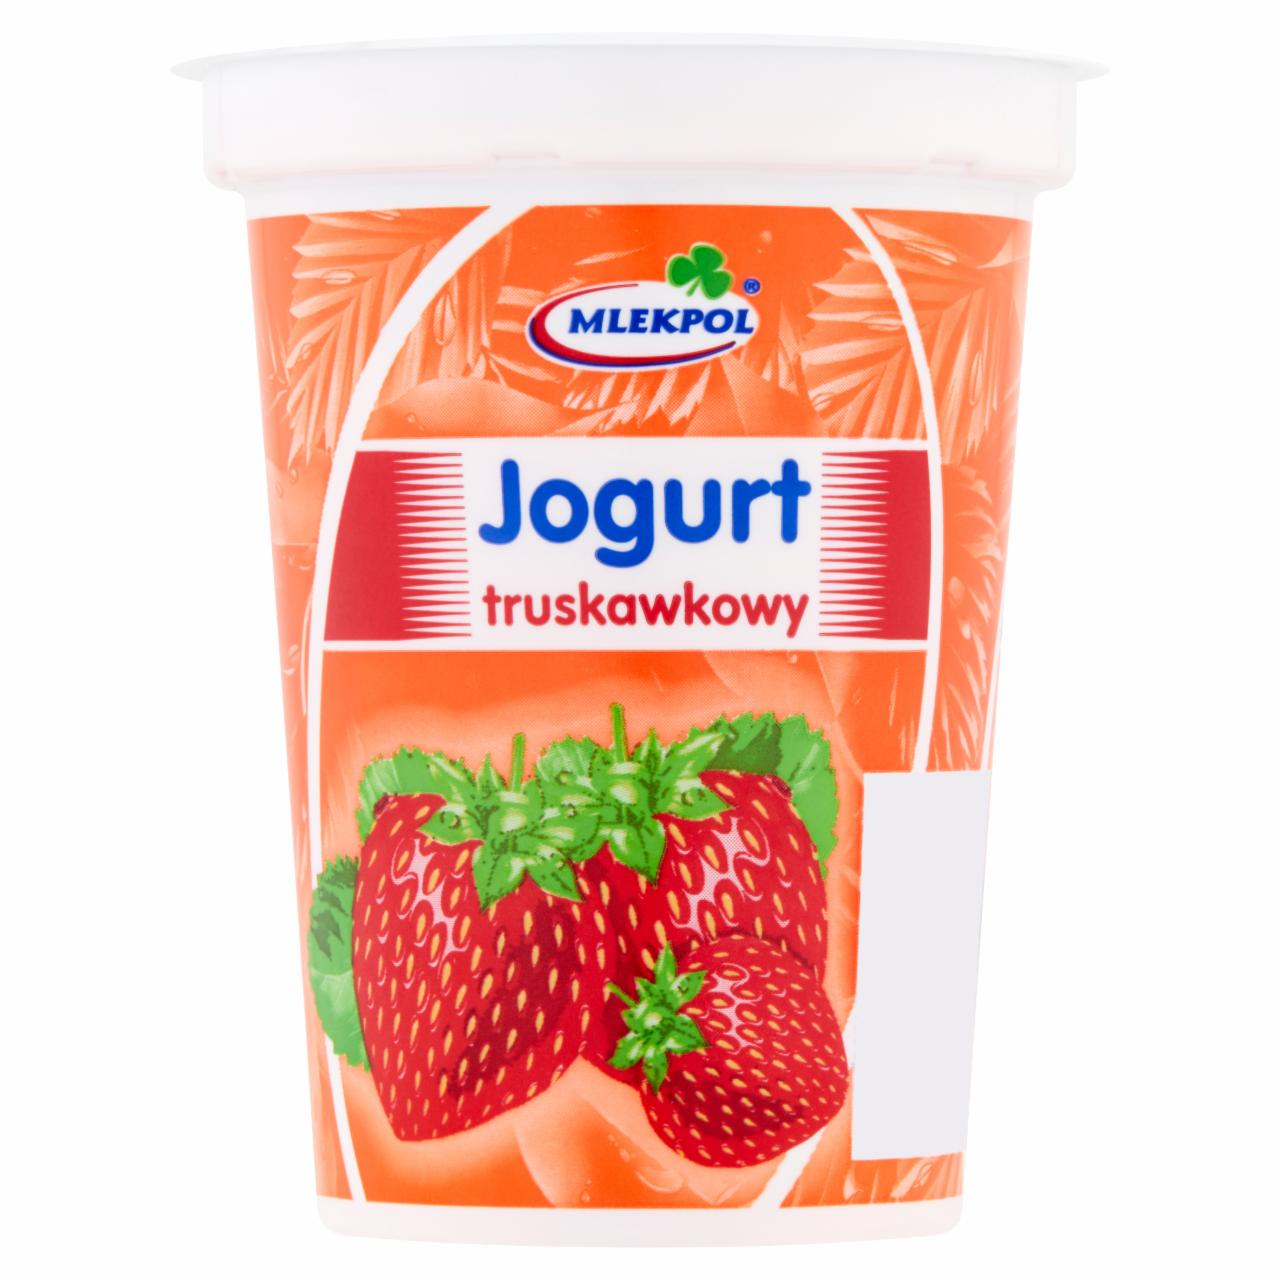 Zdjęcia - Jogurt truskawkowy Mlekpol